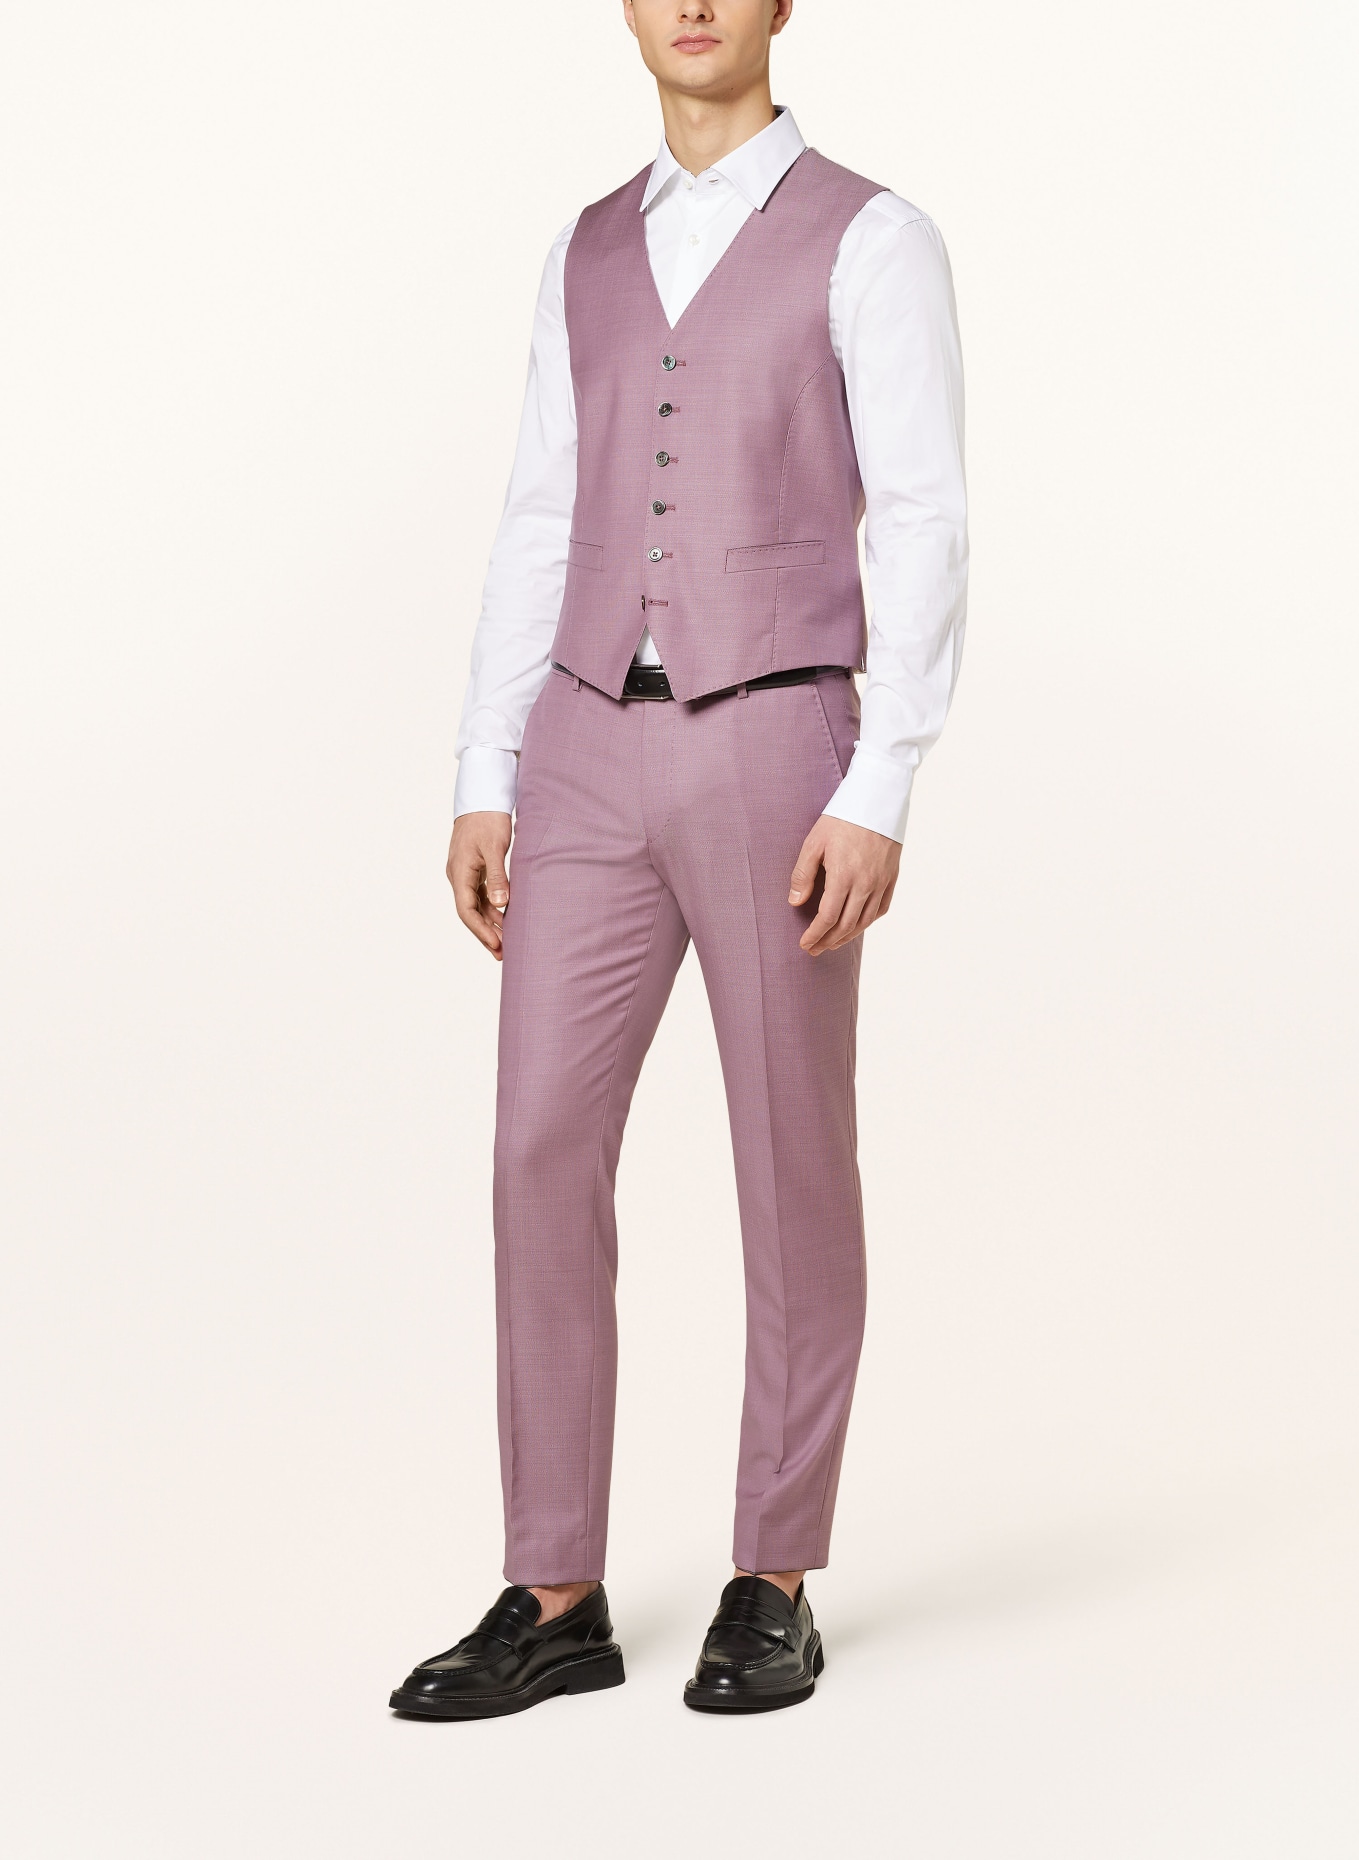 JOOP! Suit vest WEAZER slim fit, Color: 650 Dark Pink                  650 (Image 3)